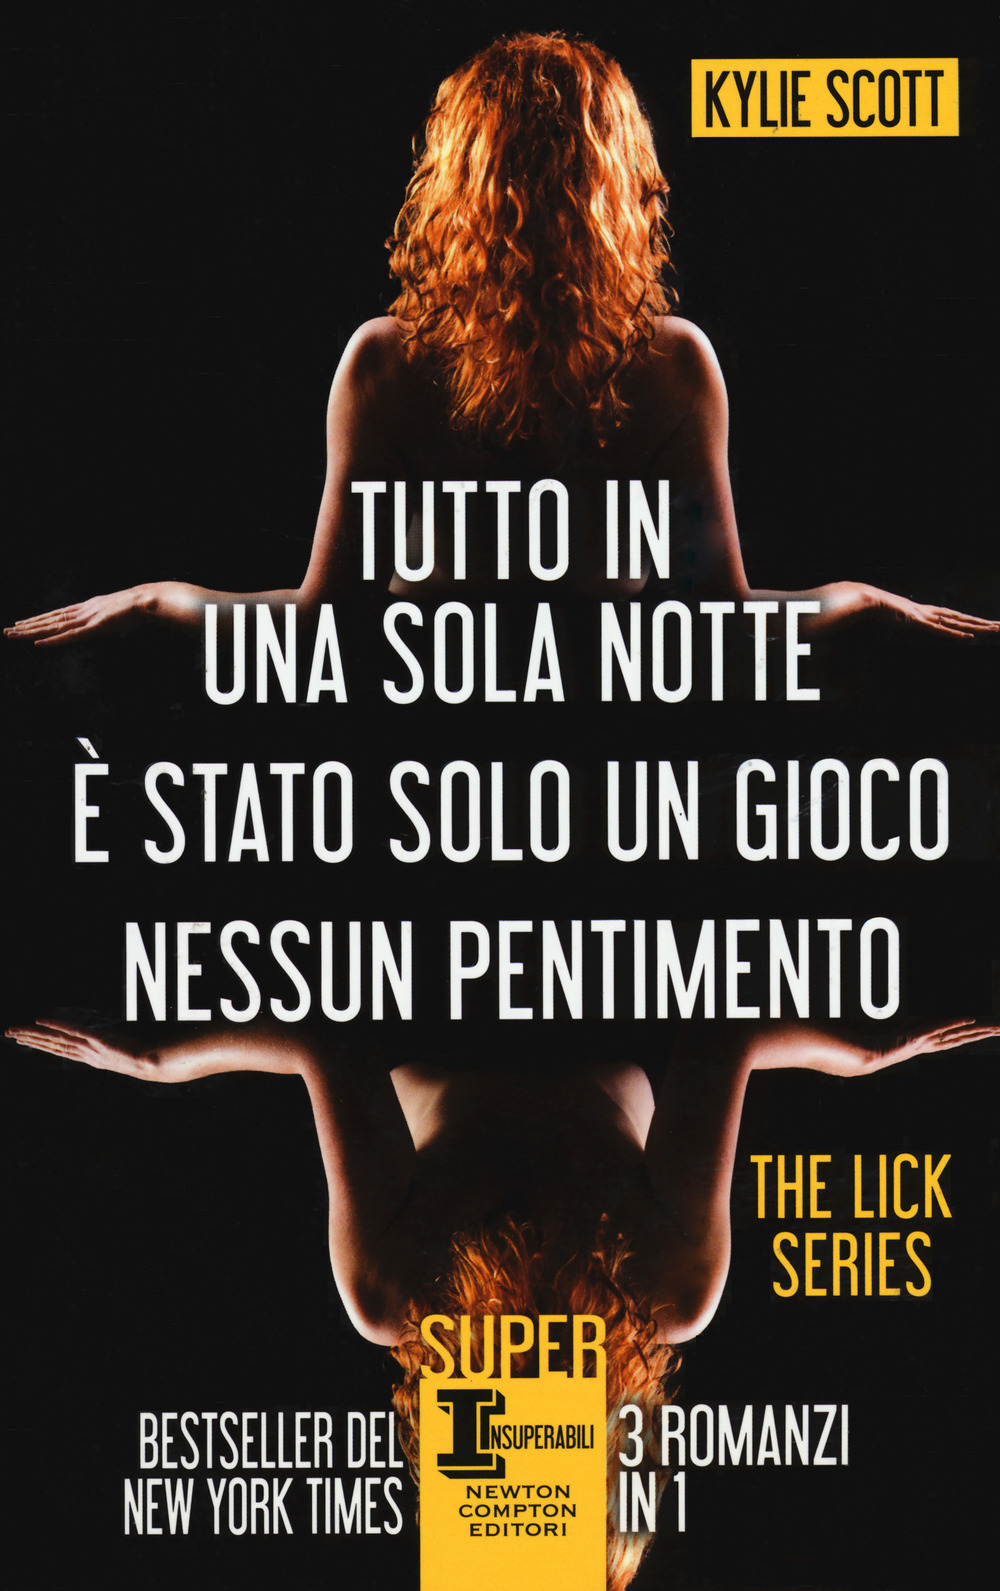 The Lick series: Tutto in una sola notte-È stato solo un gioco-Nessun pentimento